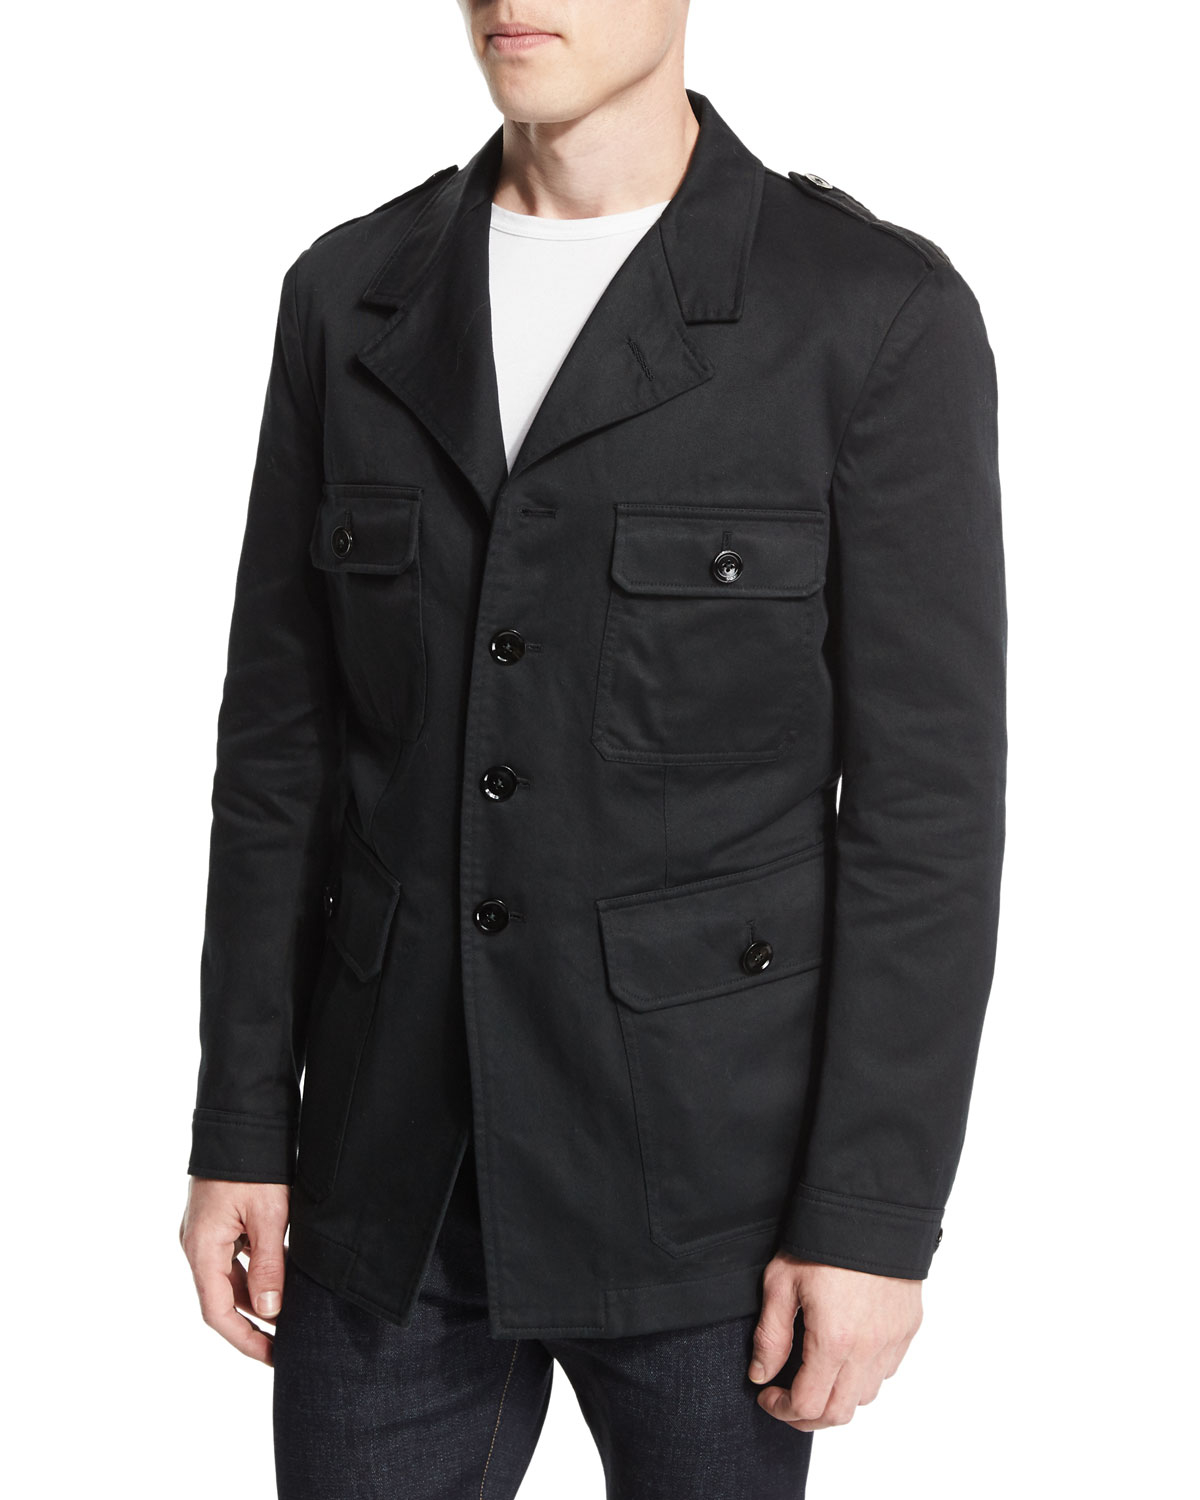 Tom Ford Vintage Wash Safari Jacket in Black for Men - Lyst